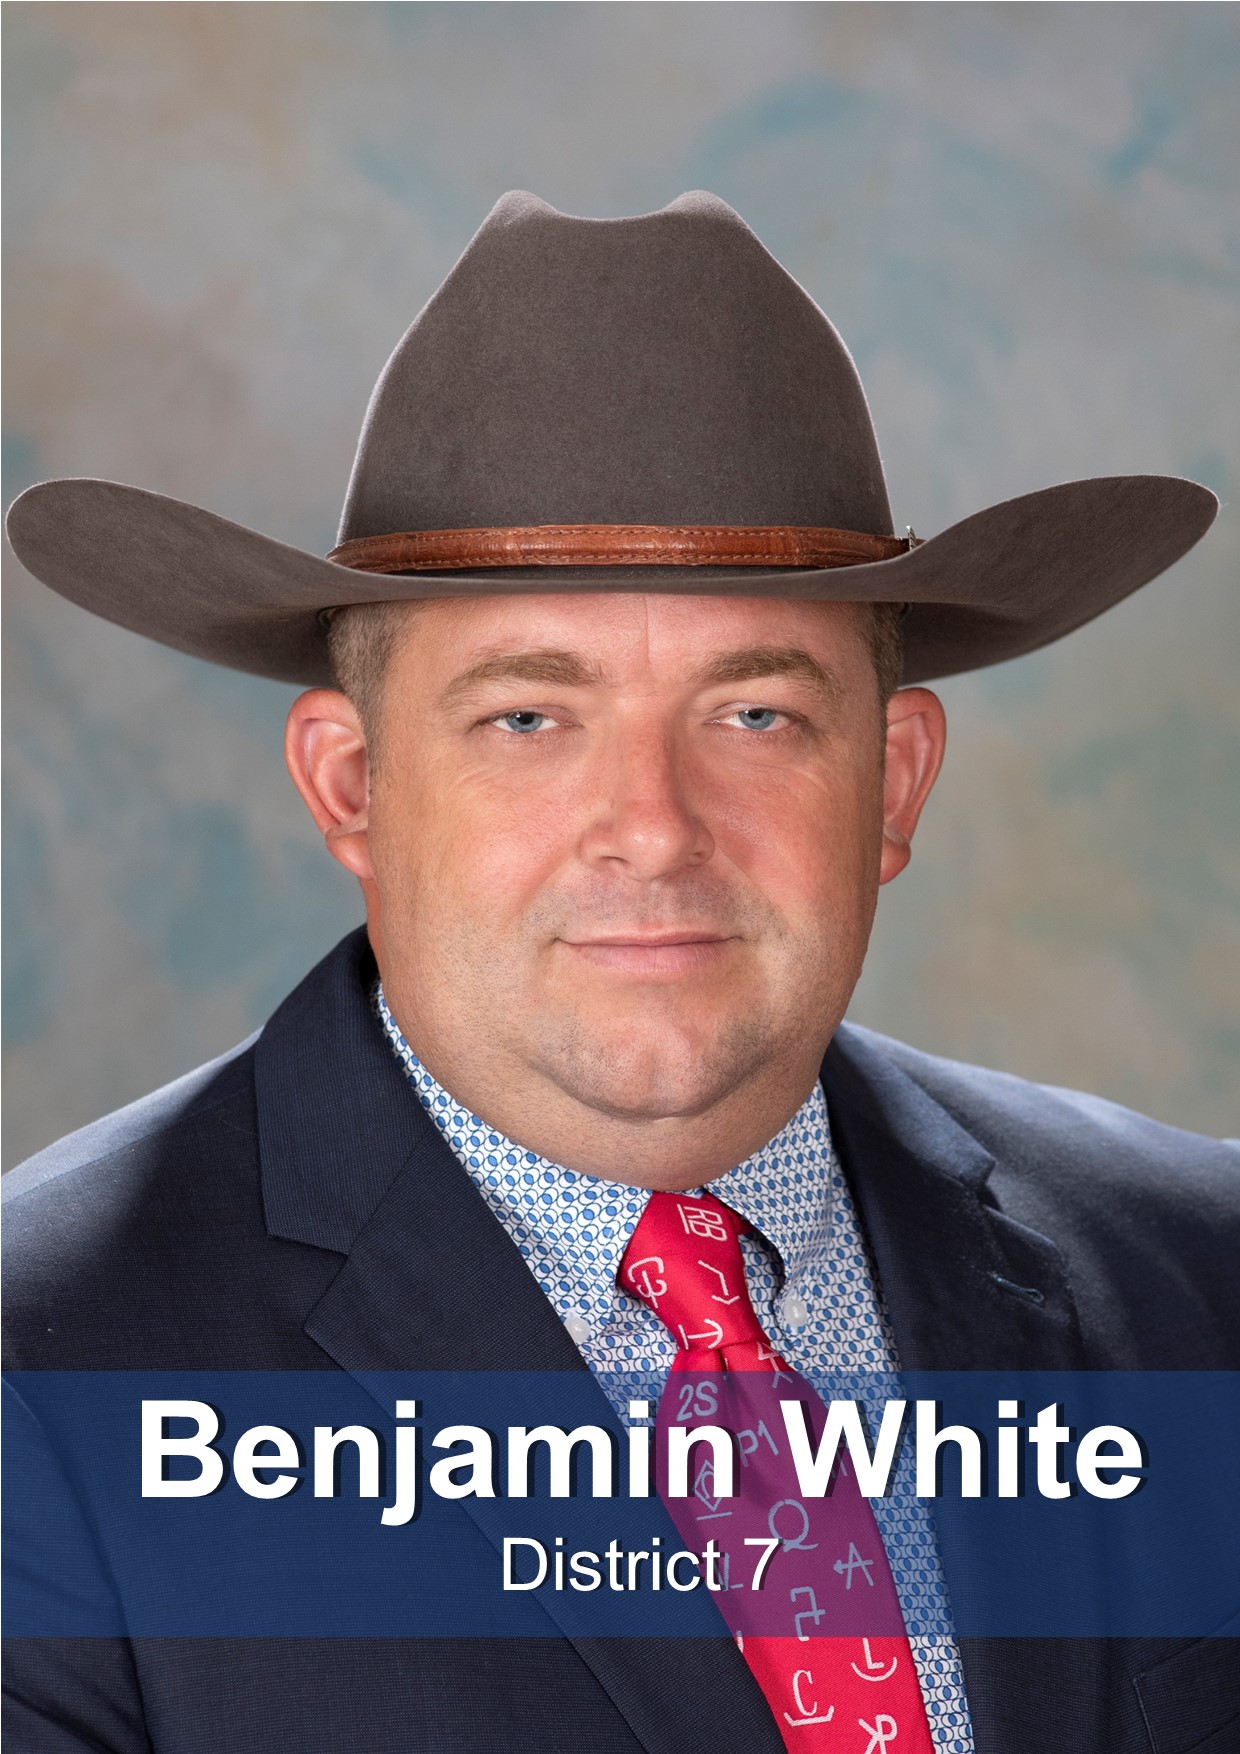 Benjamin White Board Member for District 7